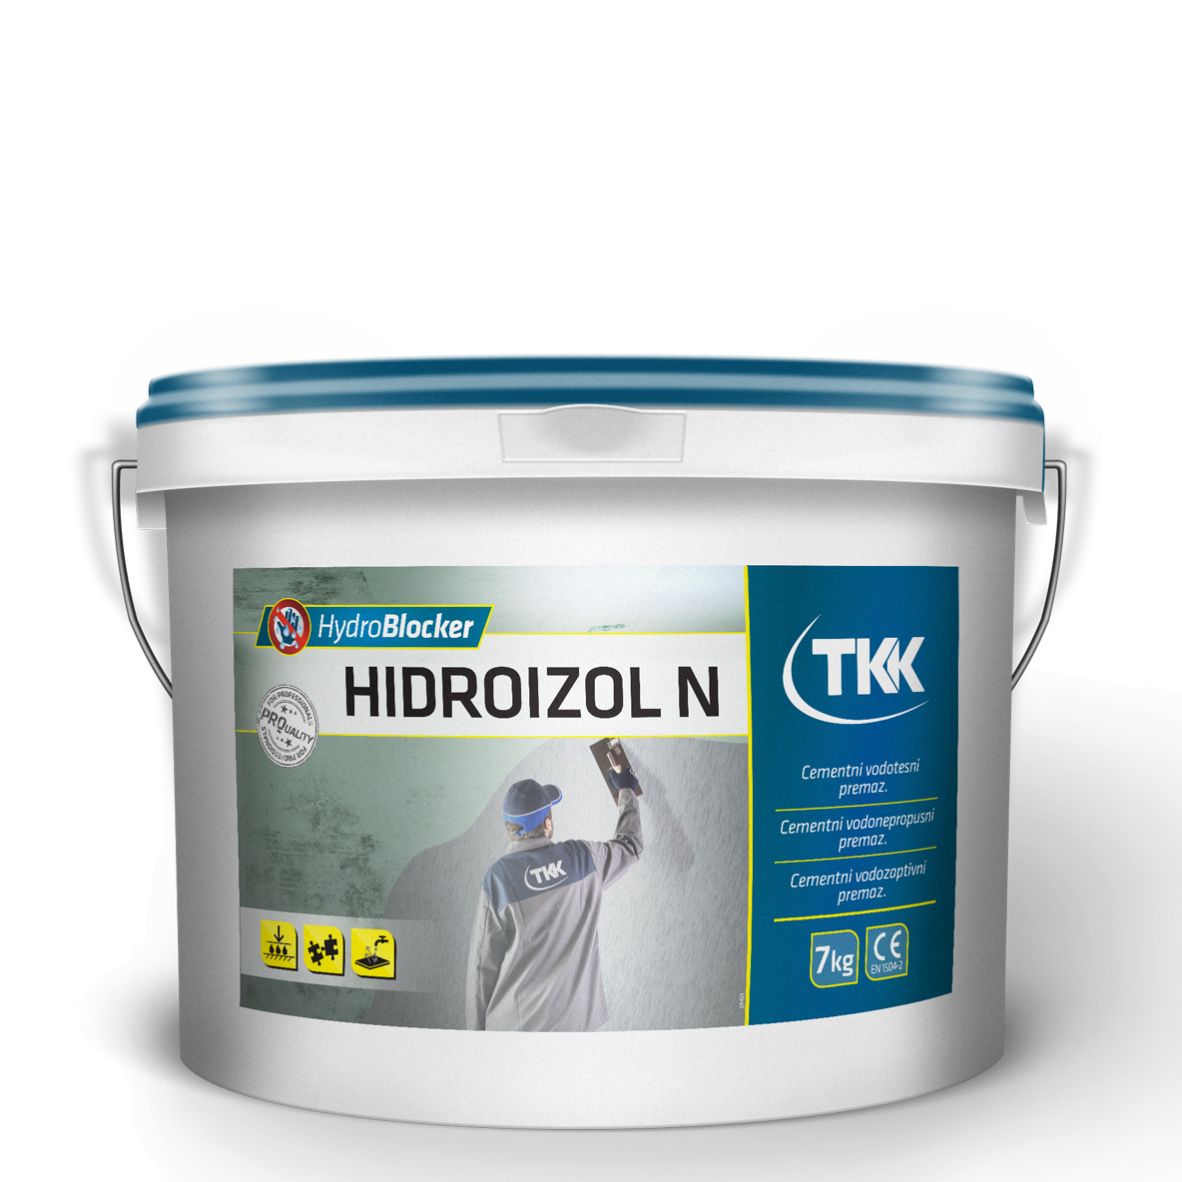 TKK Hydroblocker Hidroizol N